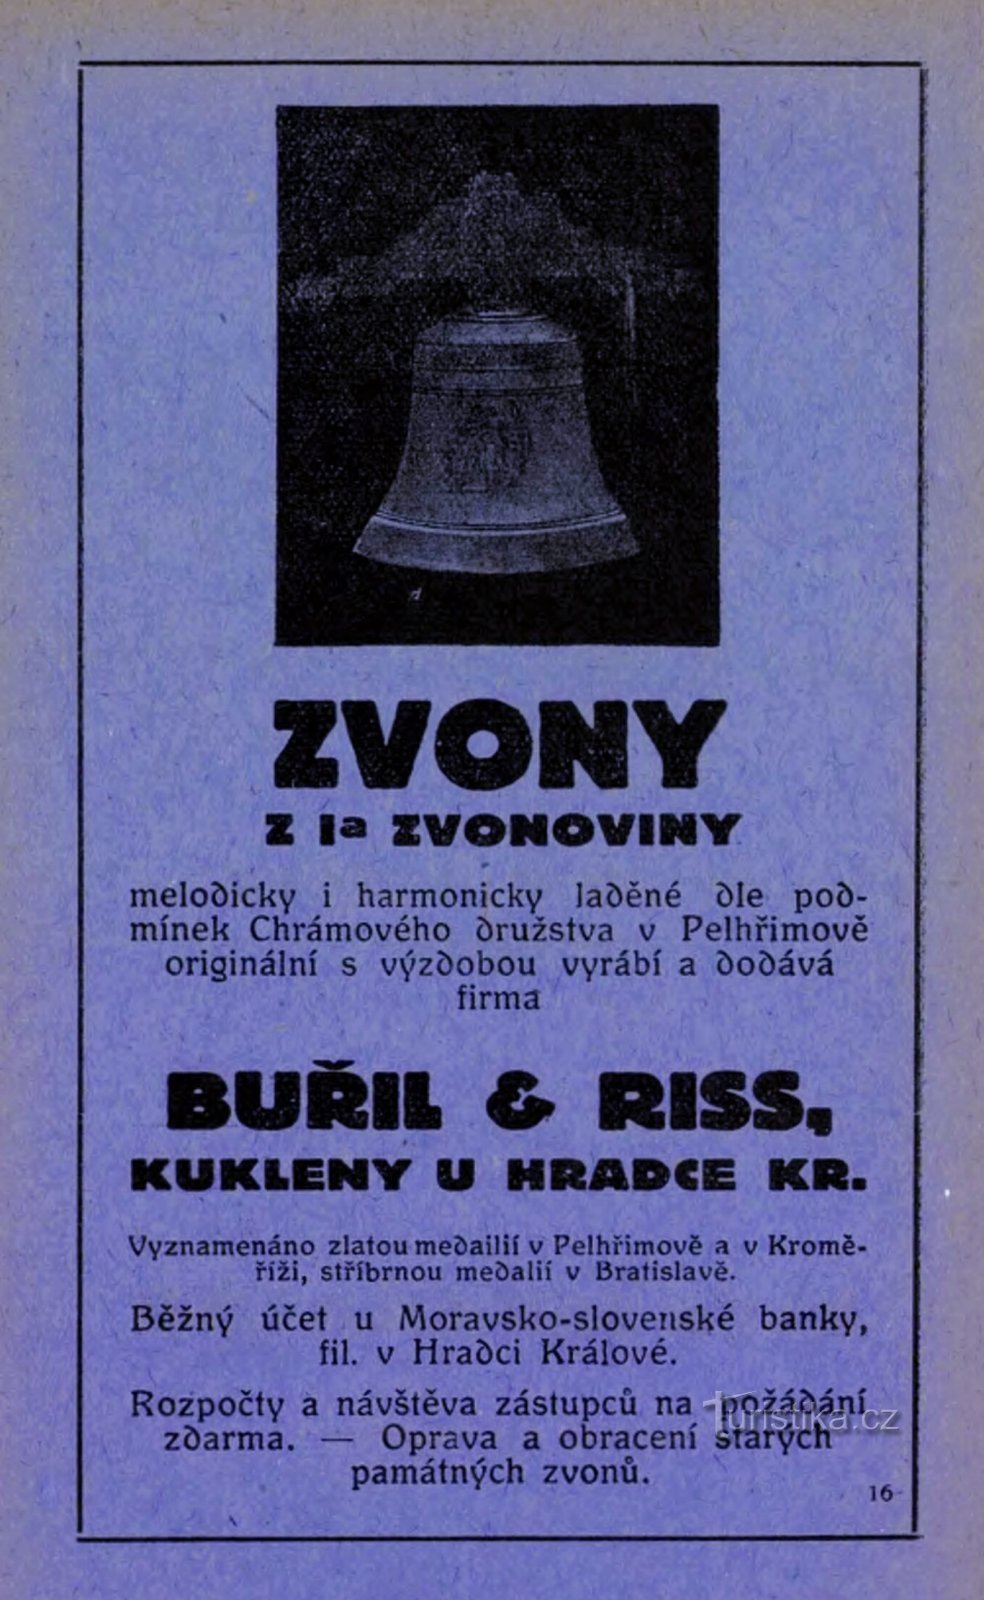 Pubblicità d'epoca del laboratorio di fabbricazione di campane Buřil e Riss a Kuken del 1928